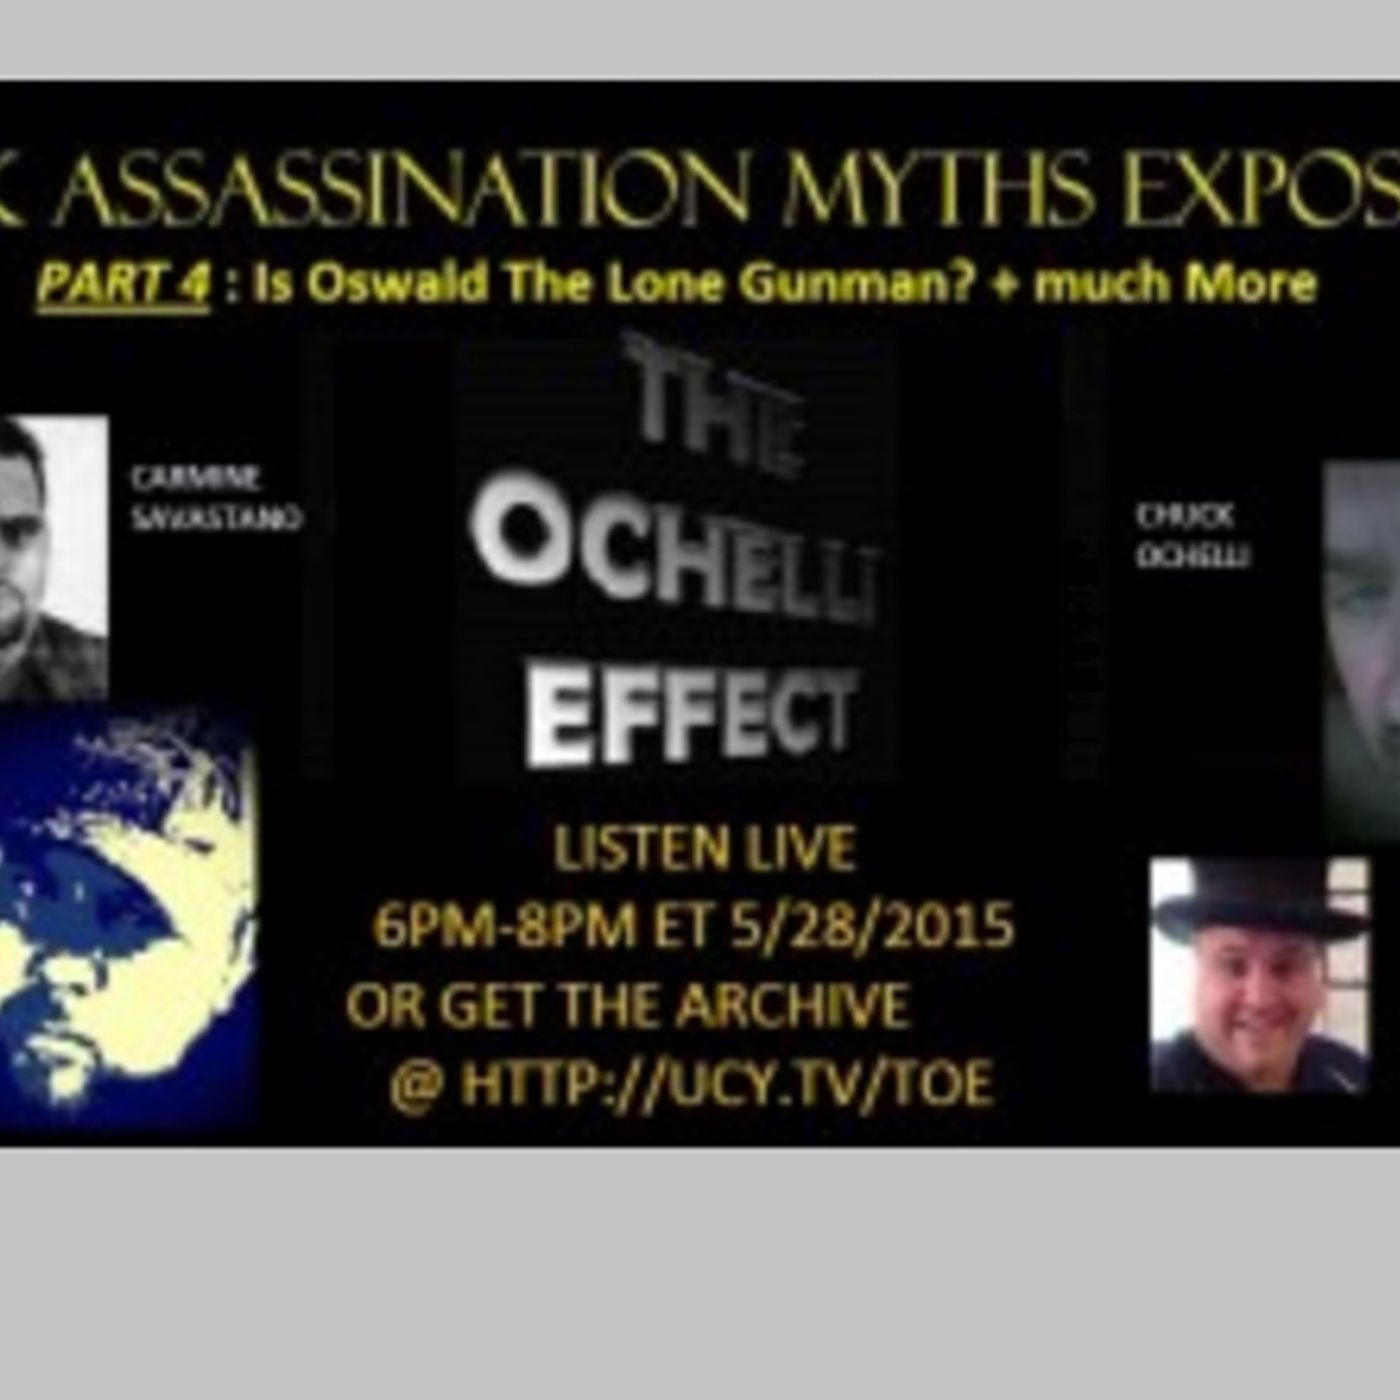 Ochelli Effect JFK Myths 4 5-28-2015 Re-Release